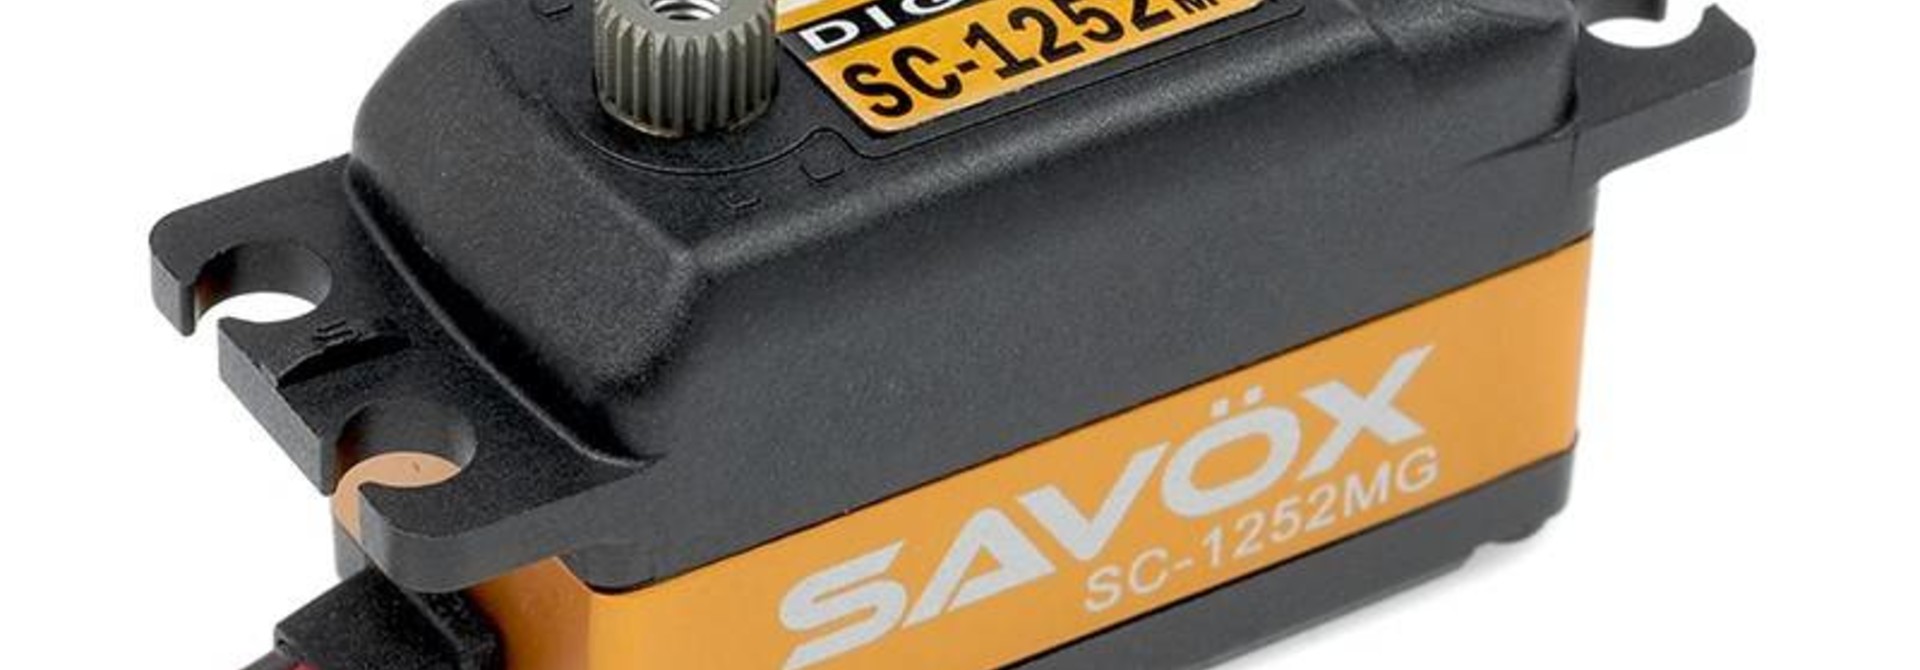 Savox - Servo - SC-1252MG - Digital - Coreless Motor - Metaal tandwielen